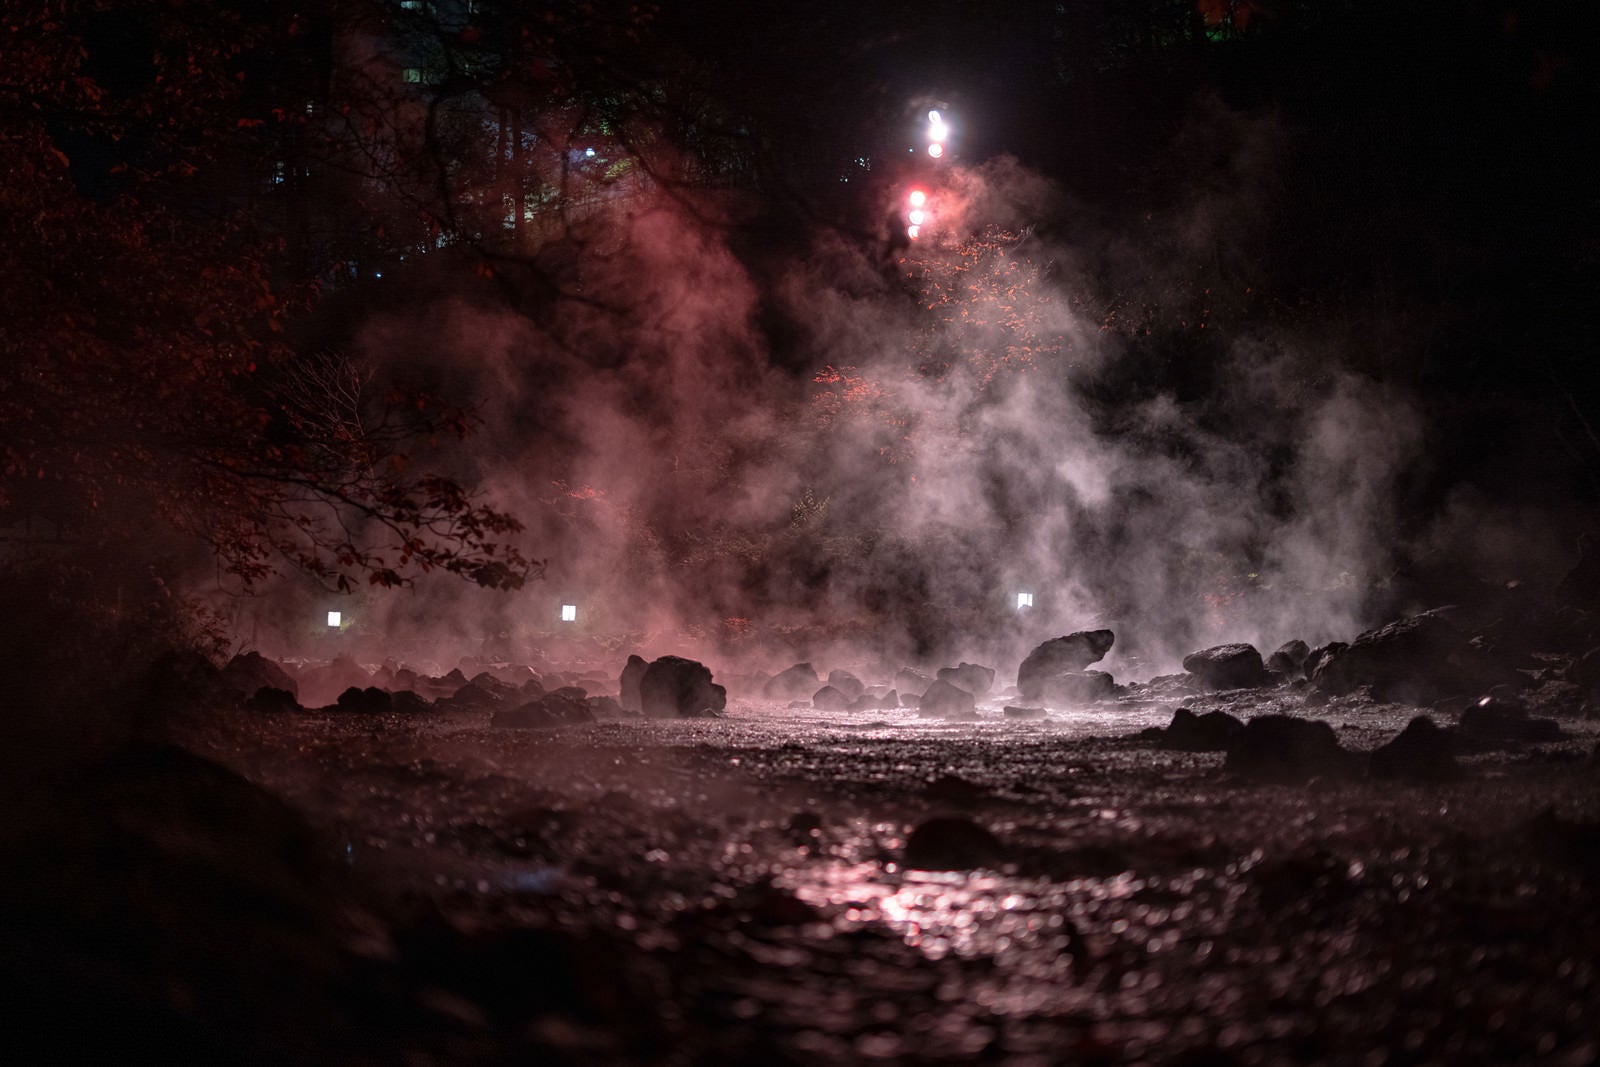 「西の河原公園の湯気とライトアップの様子」の写真